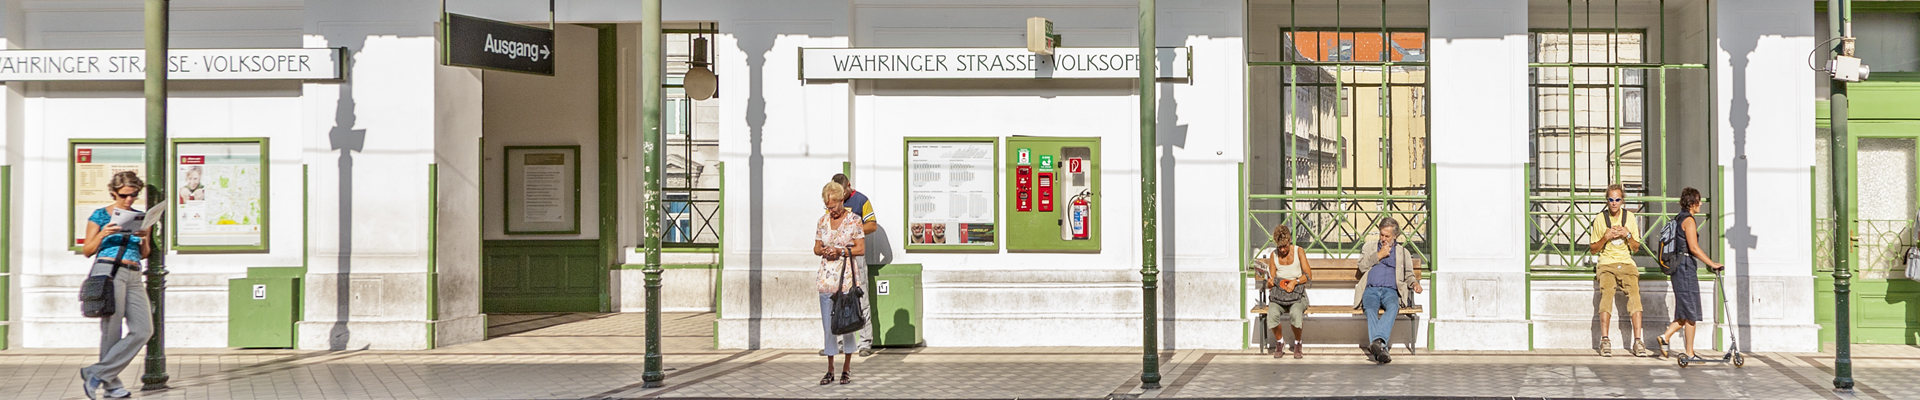 Waehringer Strasse Station in Vienna, Austria